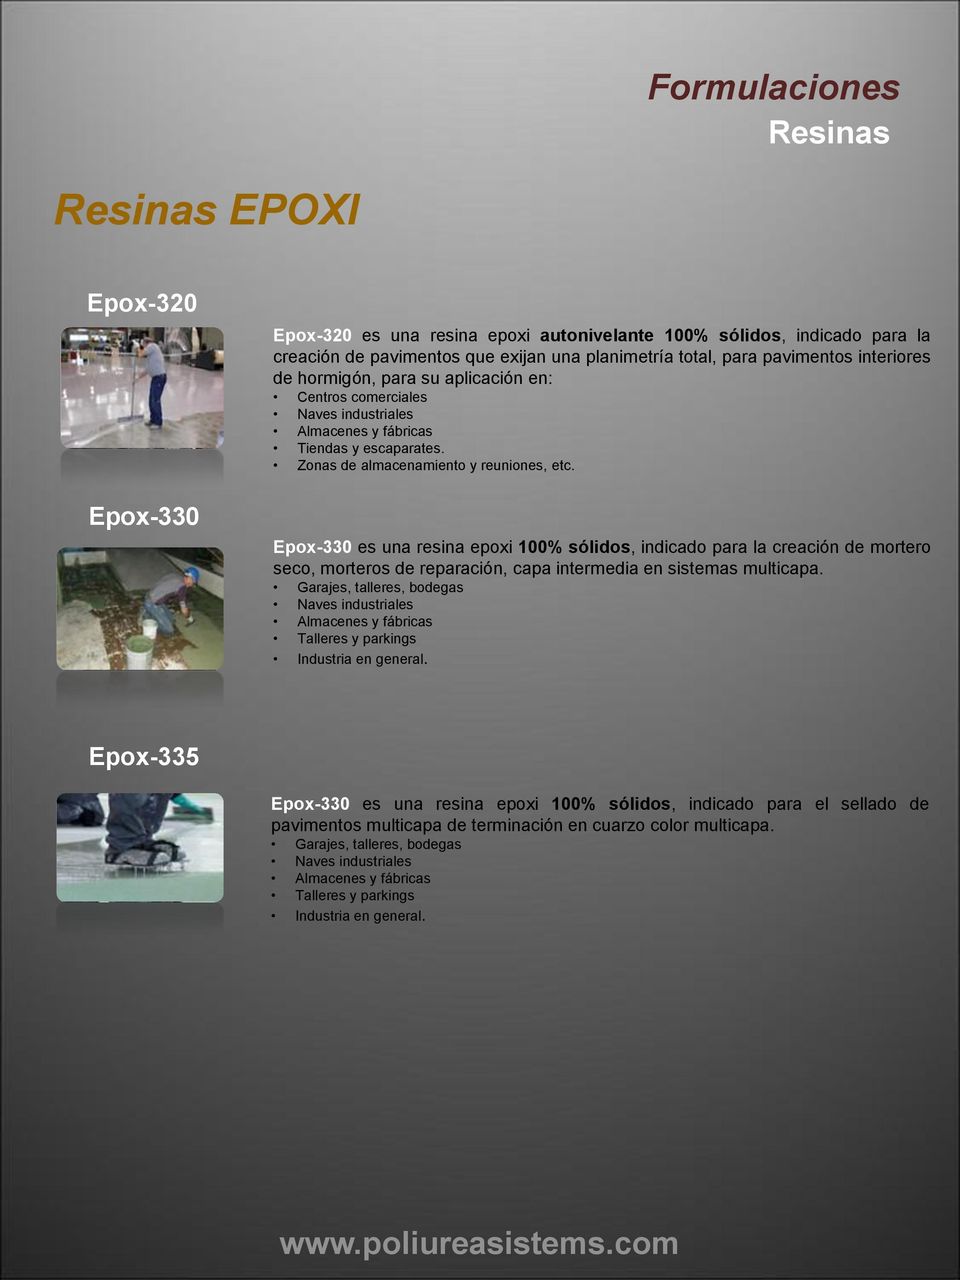 Epox-330 es una resina epoxi 100% sólidos, indicado para la creación de mortero seco, morteros de reparación, capa intermedia en sistemas multicapa.